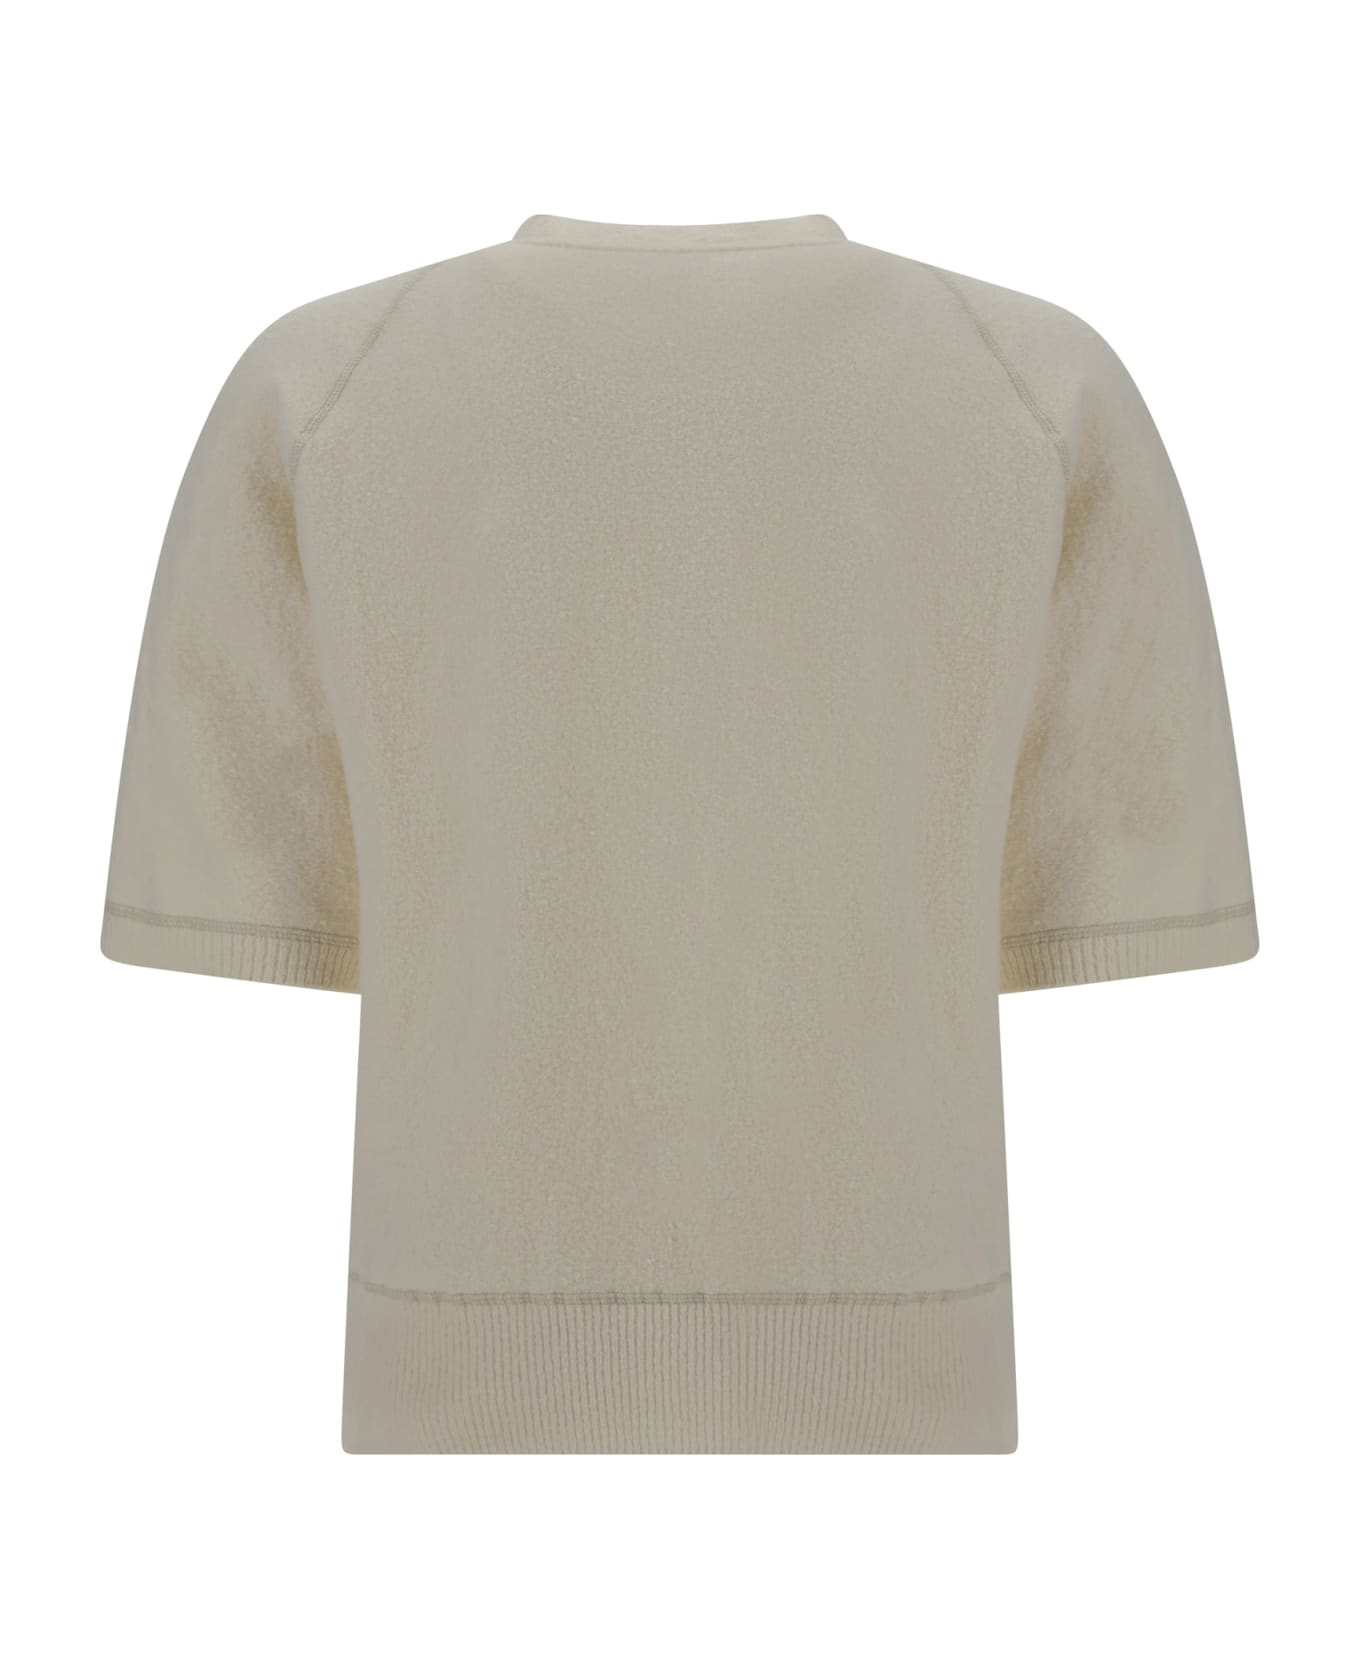 Stone Island Sweater - Bianco ニットウェア